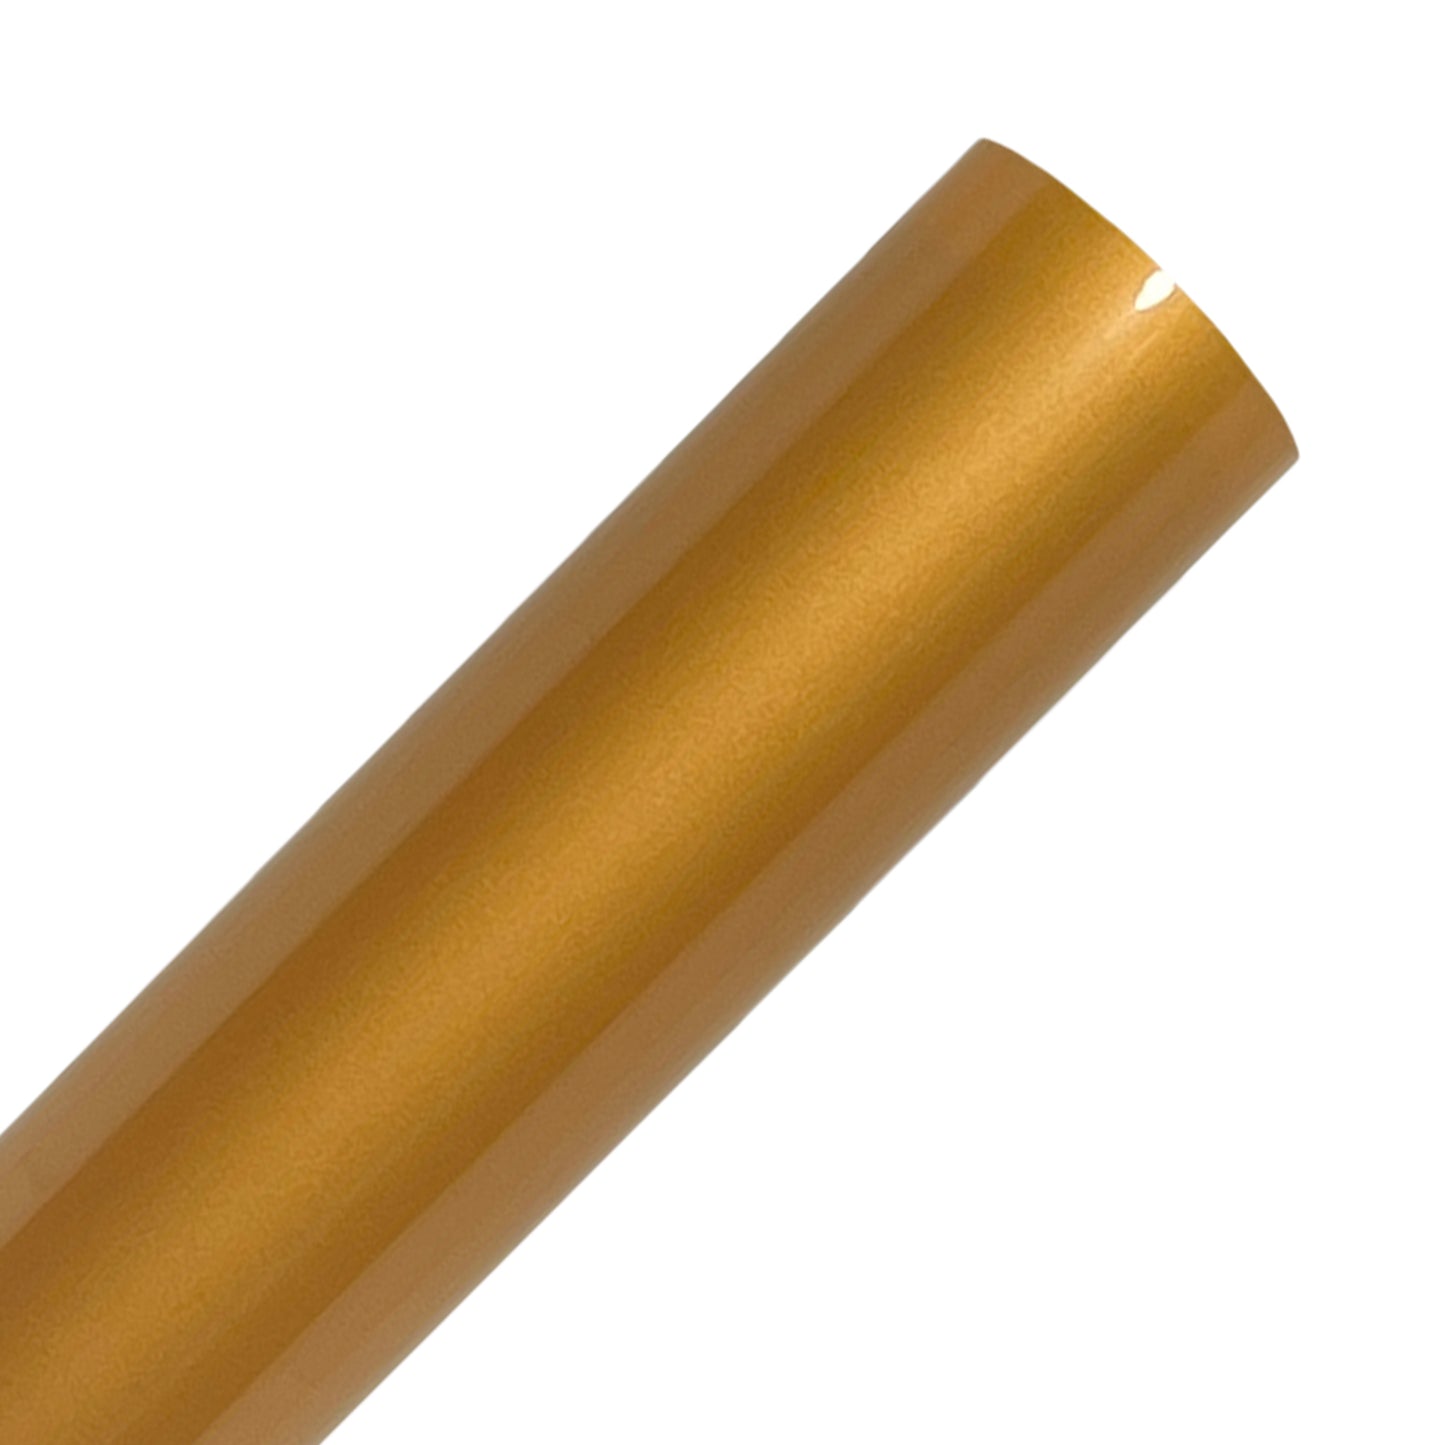 Gold Heat Transfer Vinyl Rolls By Craftables – shopcraftables